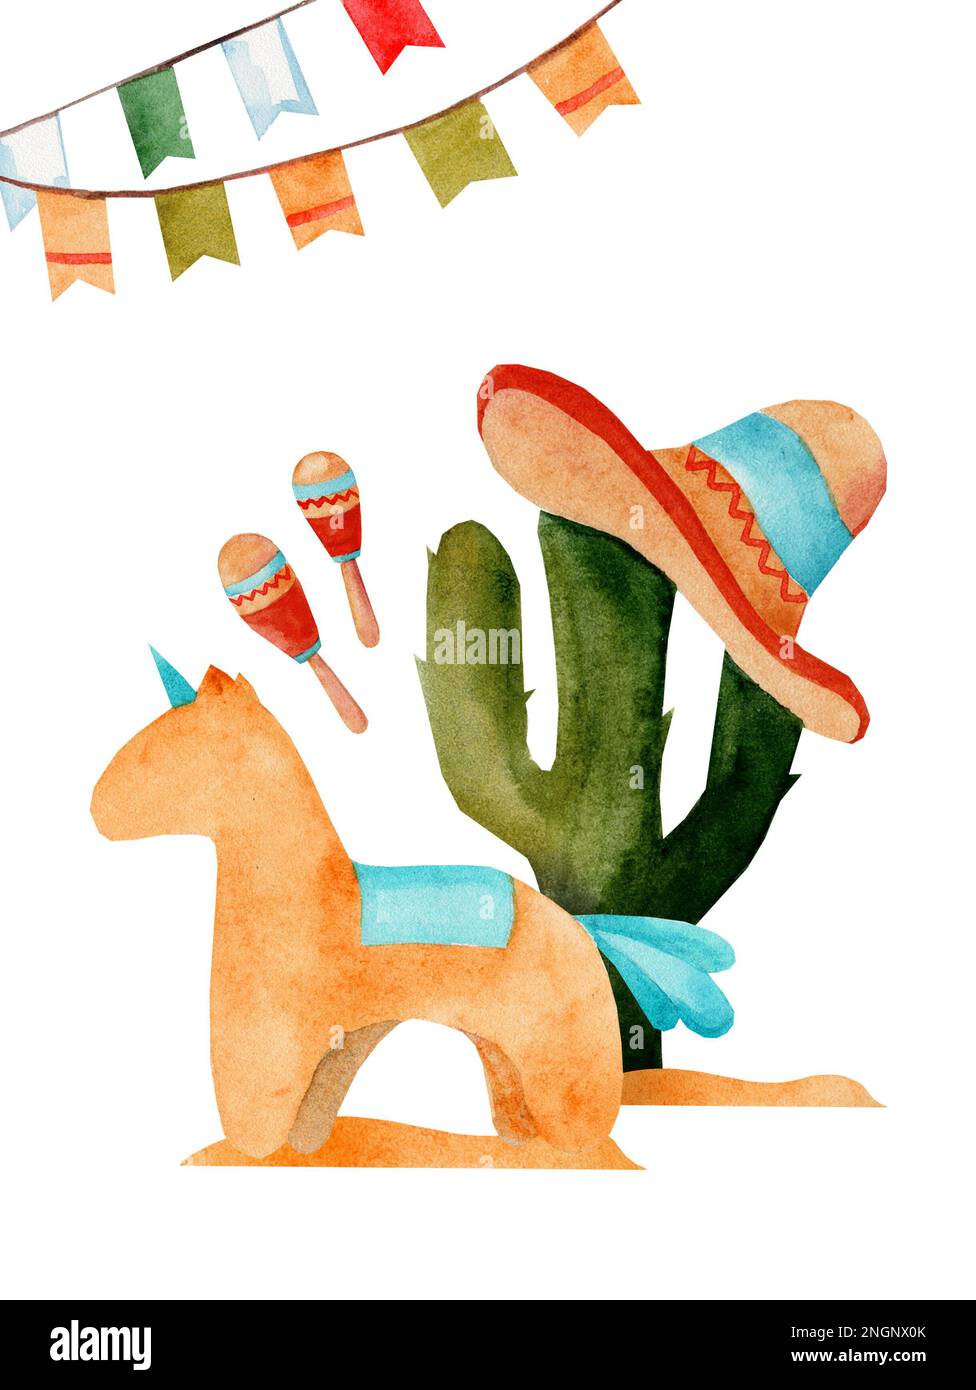 Postkartenvorlage. Aquarell-Darstellung von Cinco de Mayo, mexikanische Küche, traditionelle Festessen-Fiesta und Festivalreisesymbole Stockfoto